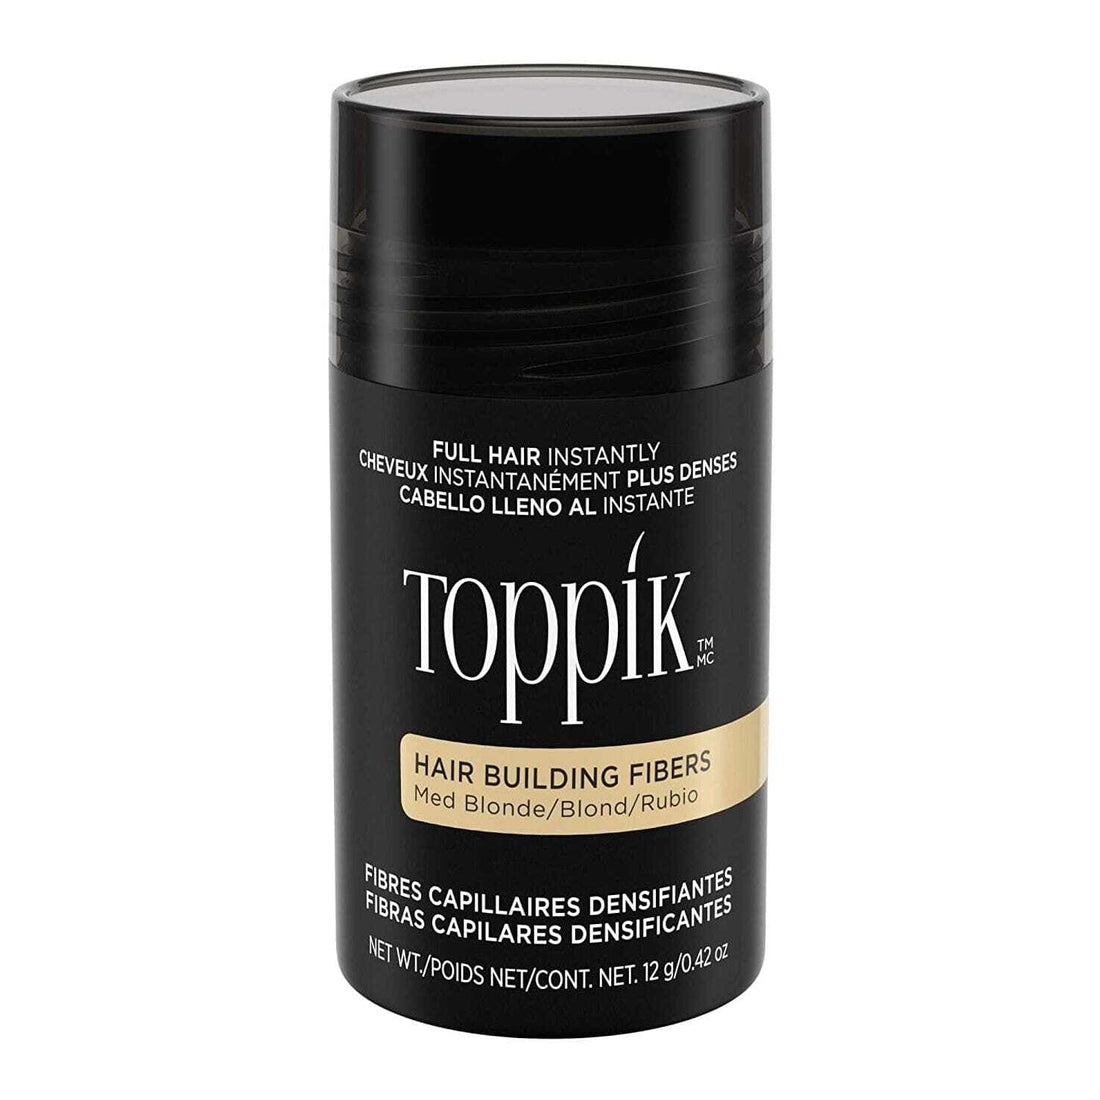 Toppik Hair Building Fibers - MEDIUM BLONDE Hair Loss Concealers Toppik 0.42 oz Shop at Skin Type Solutions